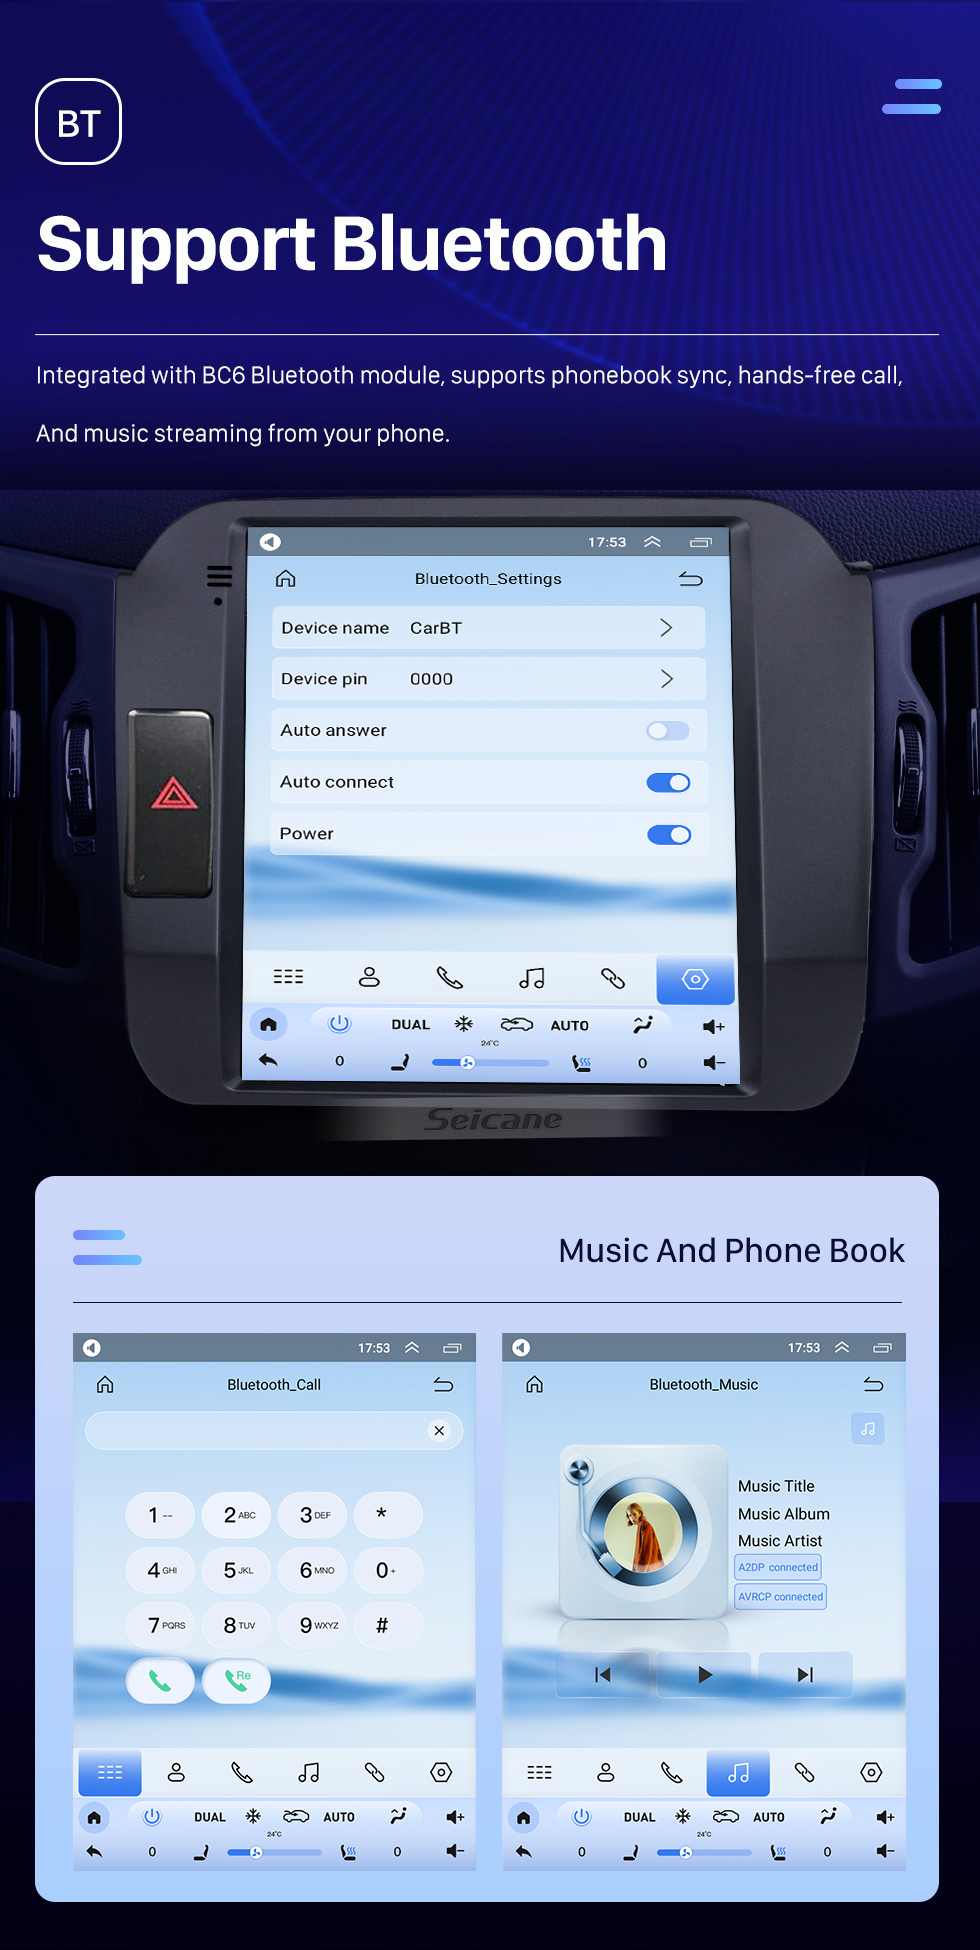 Seicane 9,7-дюймовый сенсорный HD-экран Android 10.0 Автомобильная стереосистема для 2011-2017 KIA Sportage R LHD Навигационная система Bluetooth Wi-Fi Mirror Link Поддержка USB DVD-плеер Carplay 4G